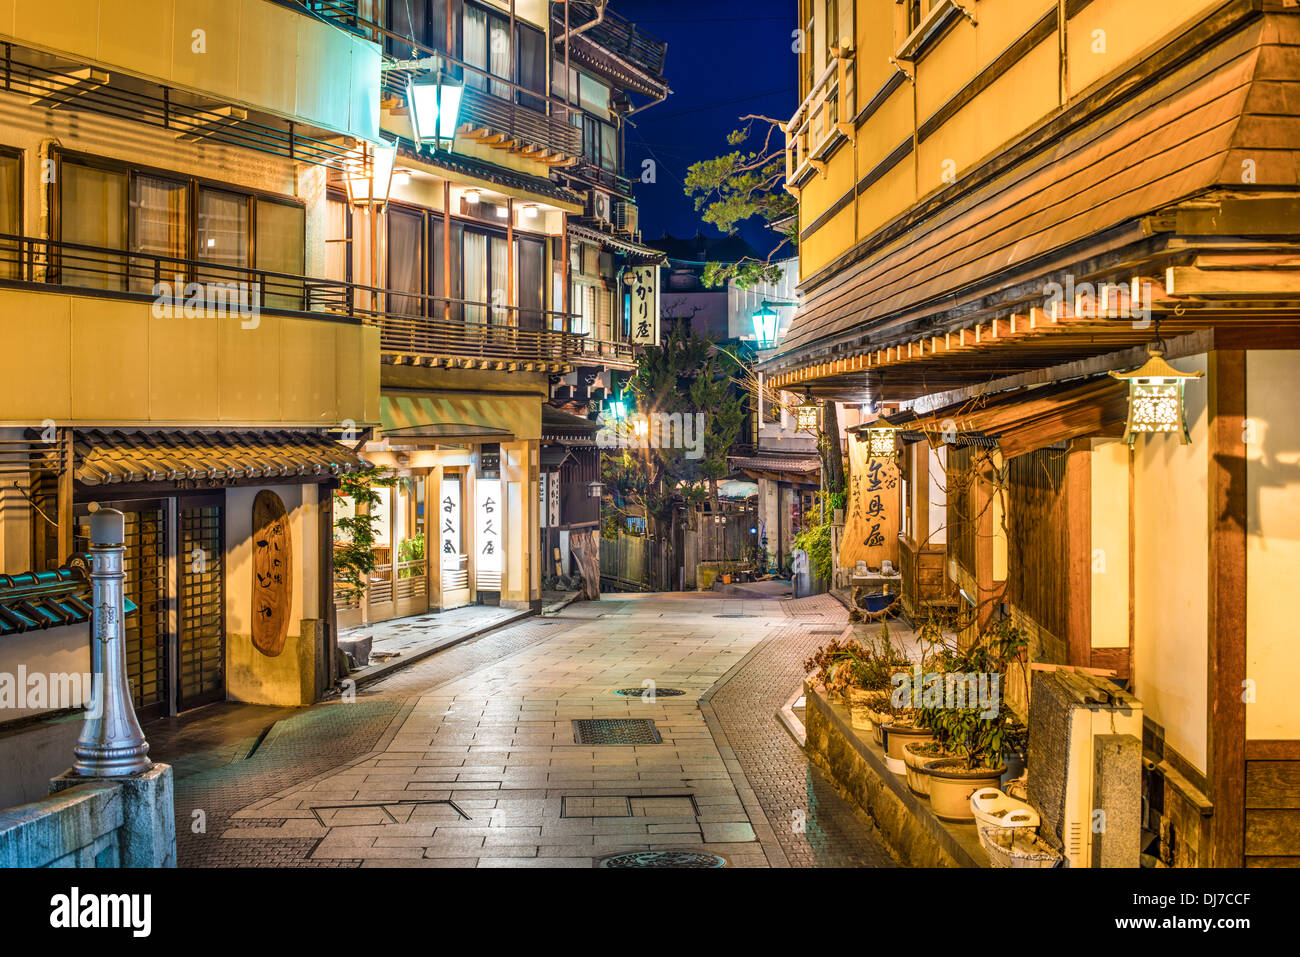 Shibu Onsen ryokan and hot spring resorts in Nagano, Japan. Stock Photo